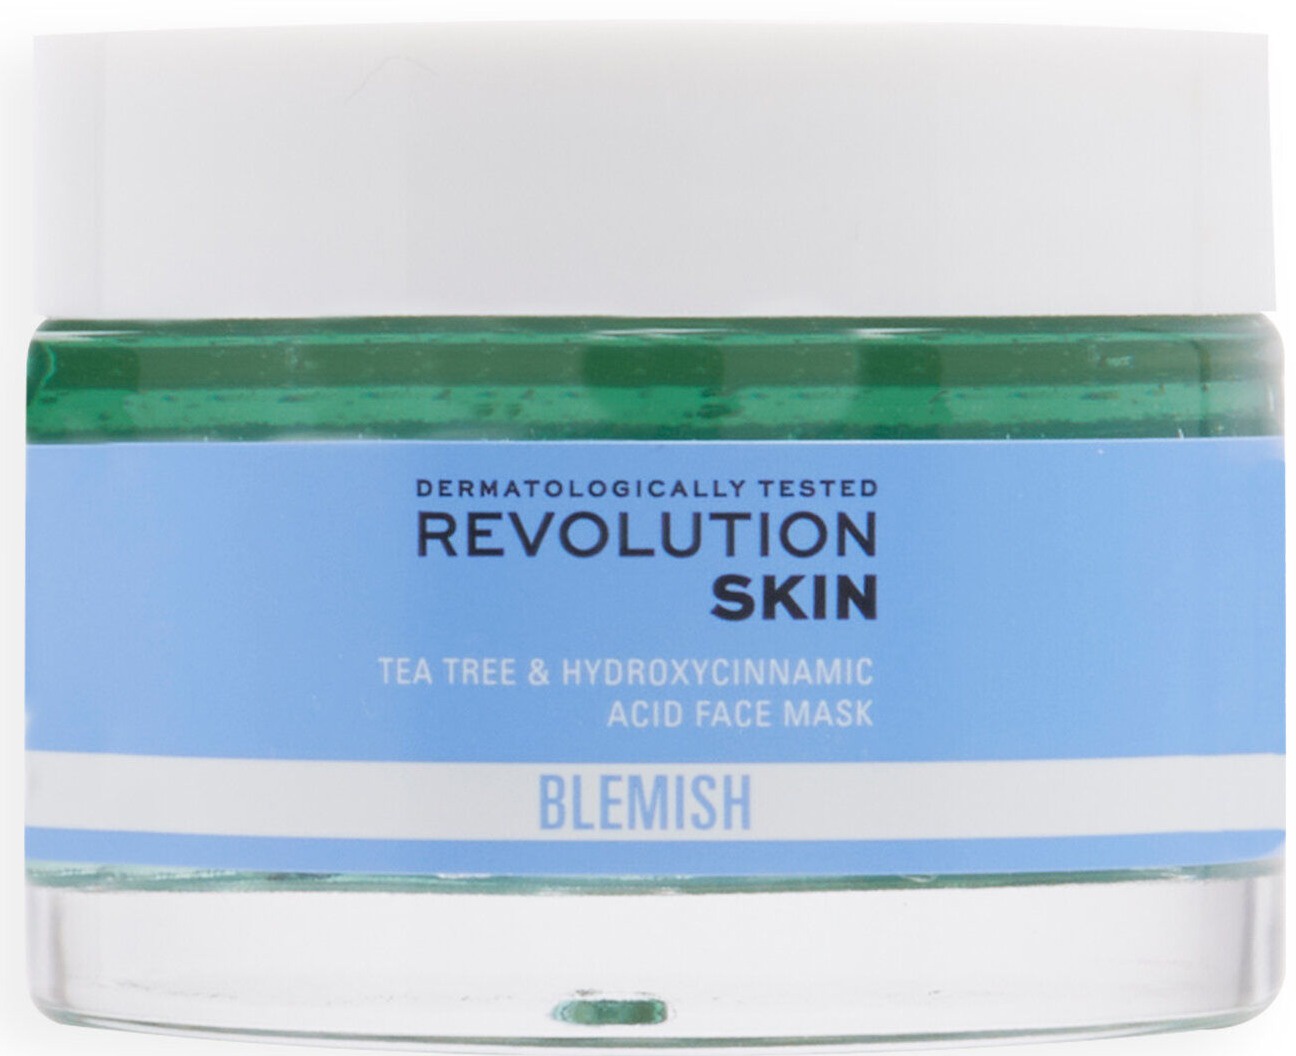 Revolution Skincare Blemish Tea Tree & Hydroxycinnamic Acid Face Mask